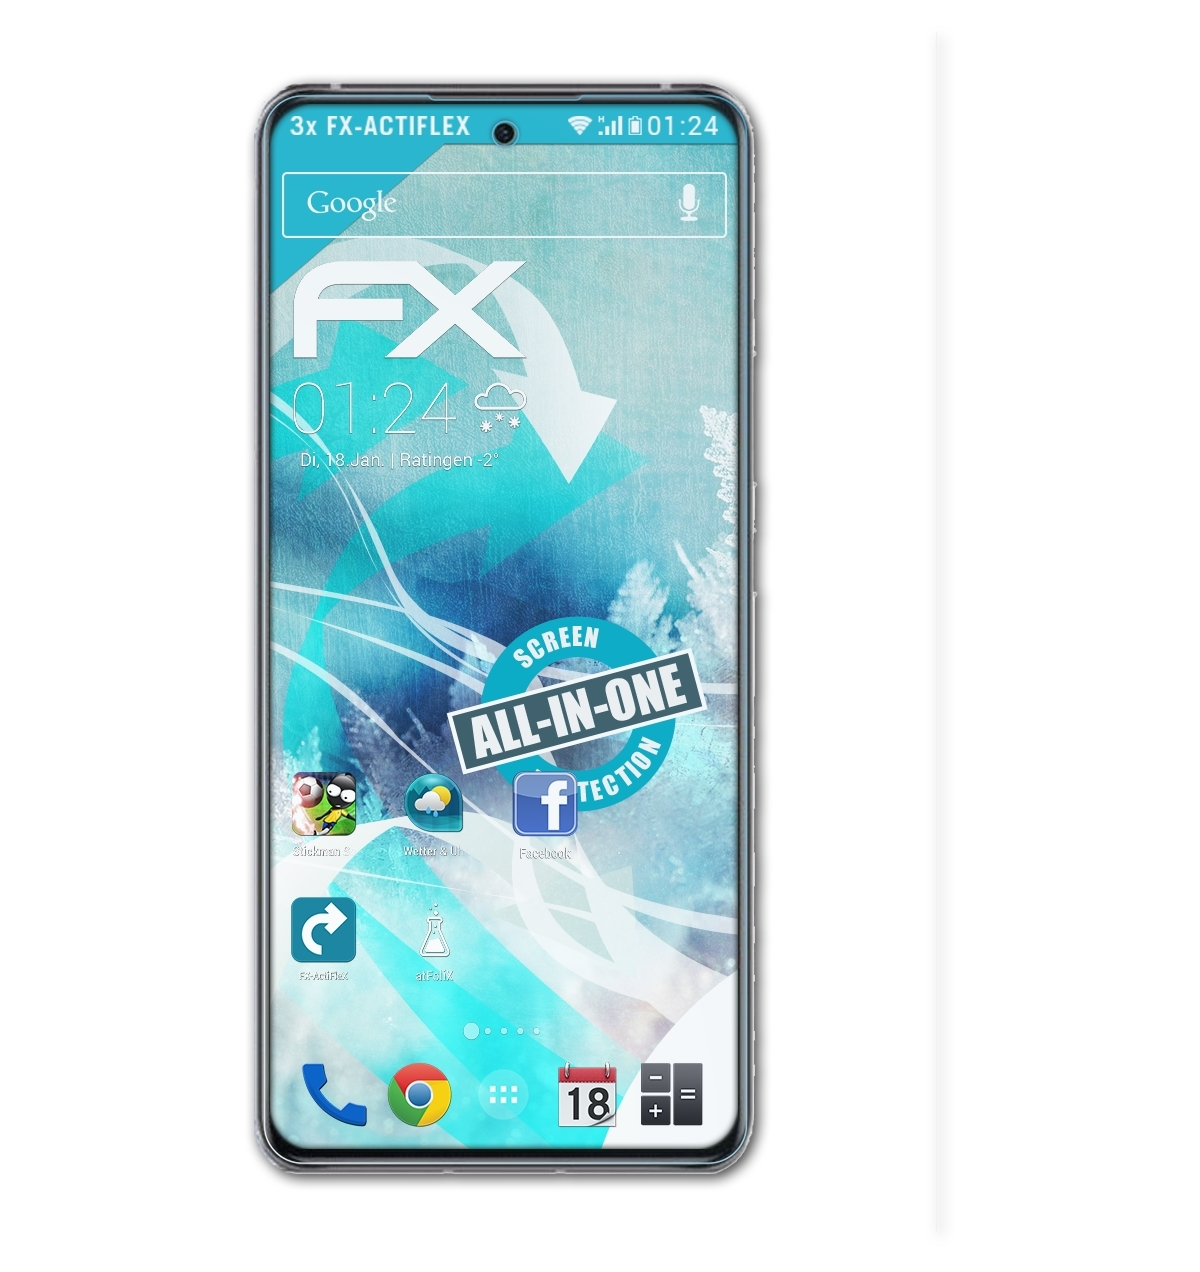 ATFOLIX 3x FX-ActiFleX ZTE 30 Pro) Axon Displayschutz(für